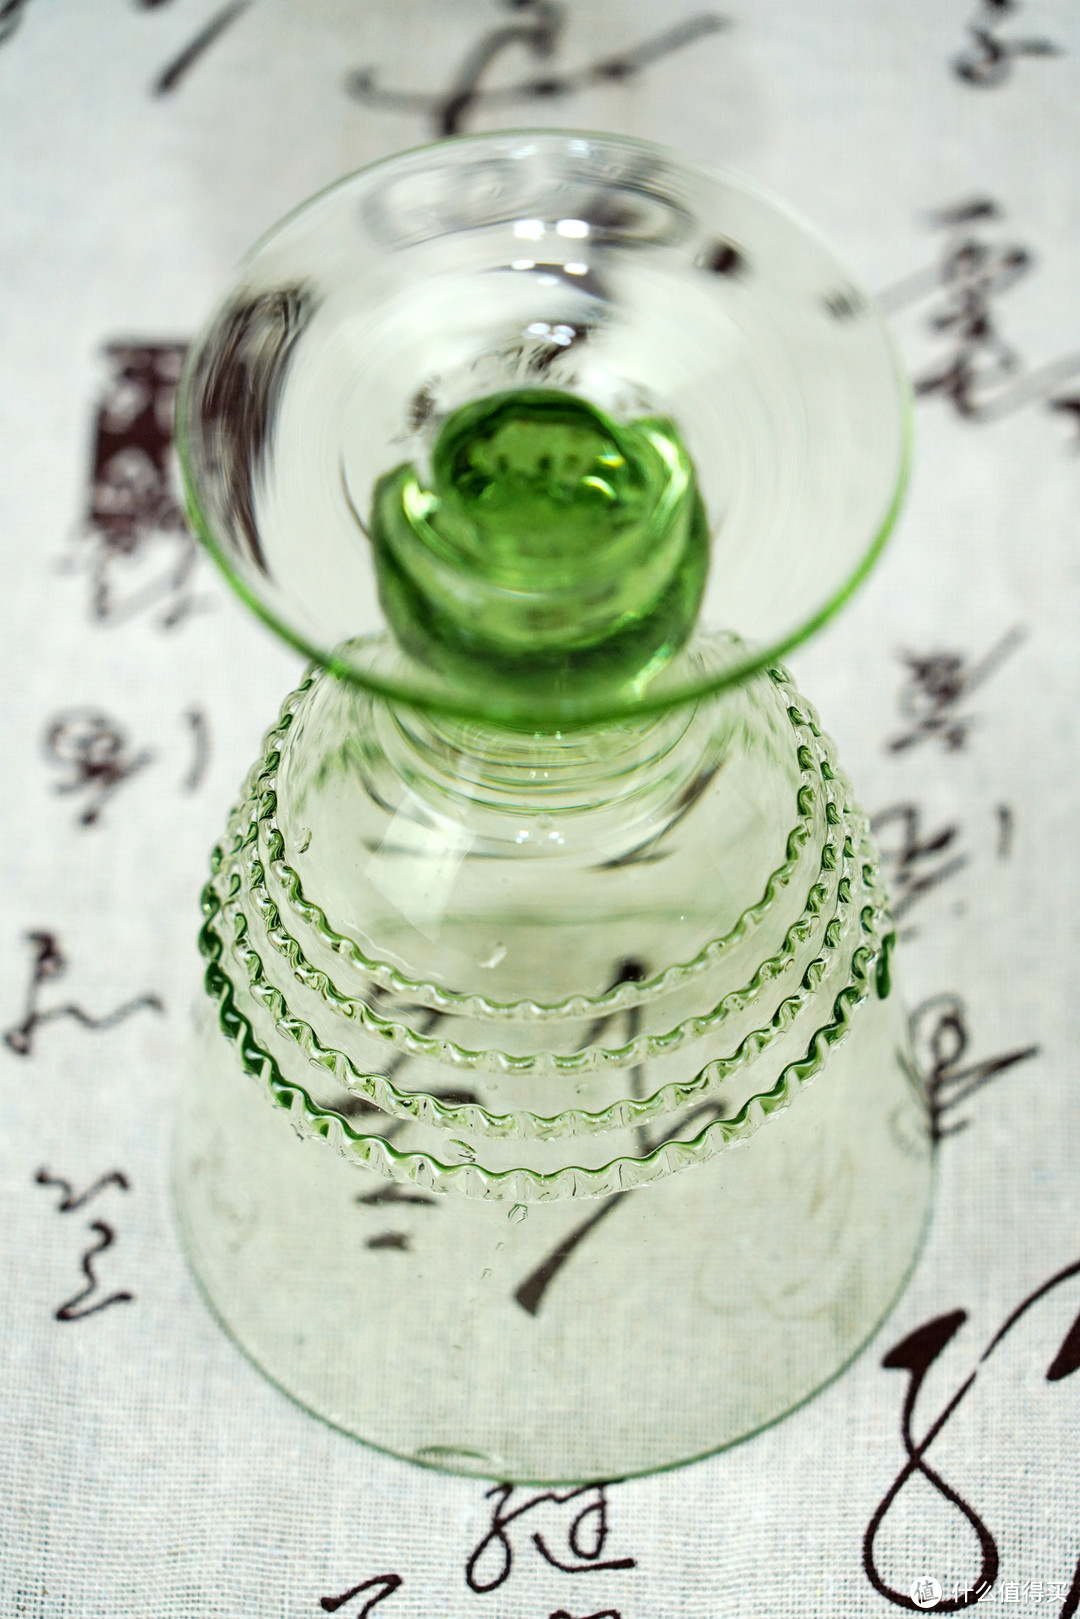 春意盎然，森系之美：夏天喝巴黎水，这款更配 - 德国FARBGLASHUTTE图林根 手工玻璃杯